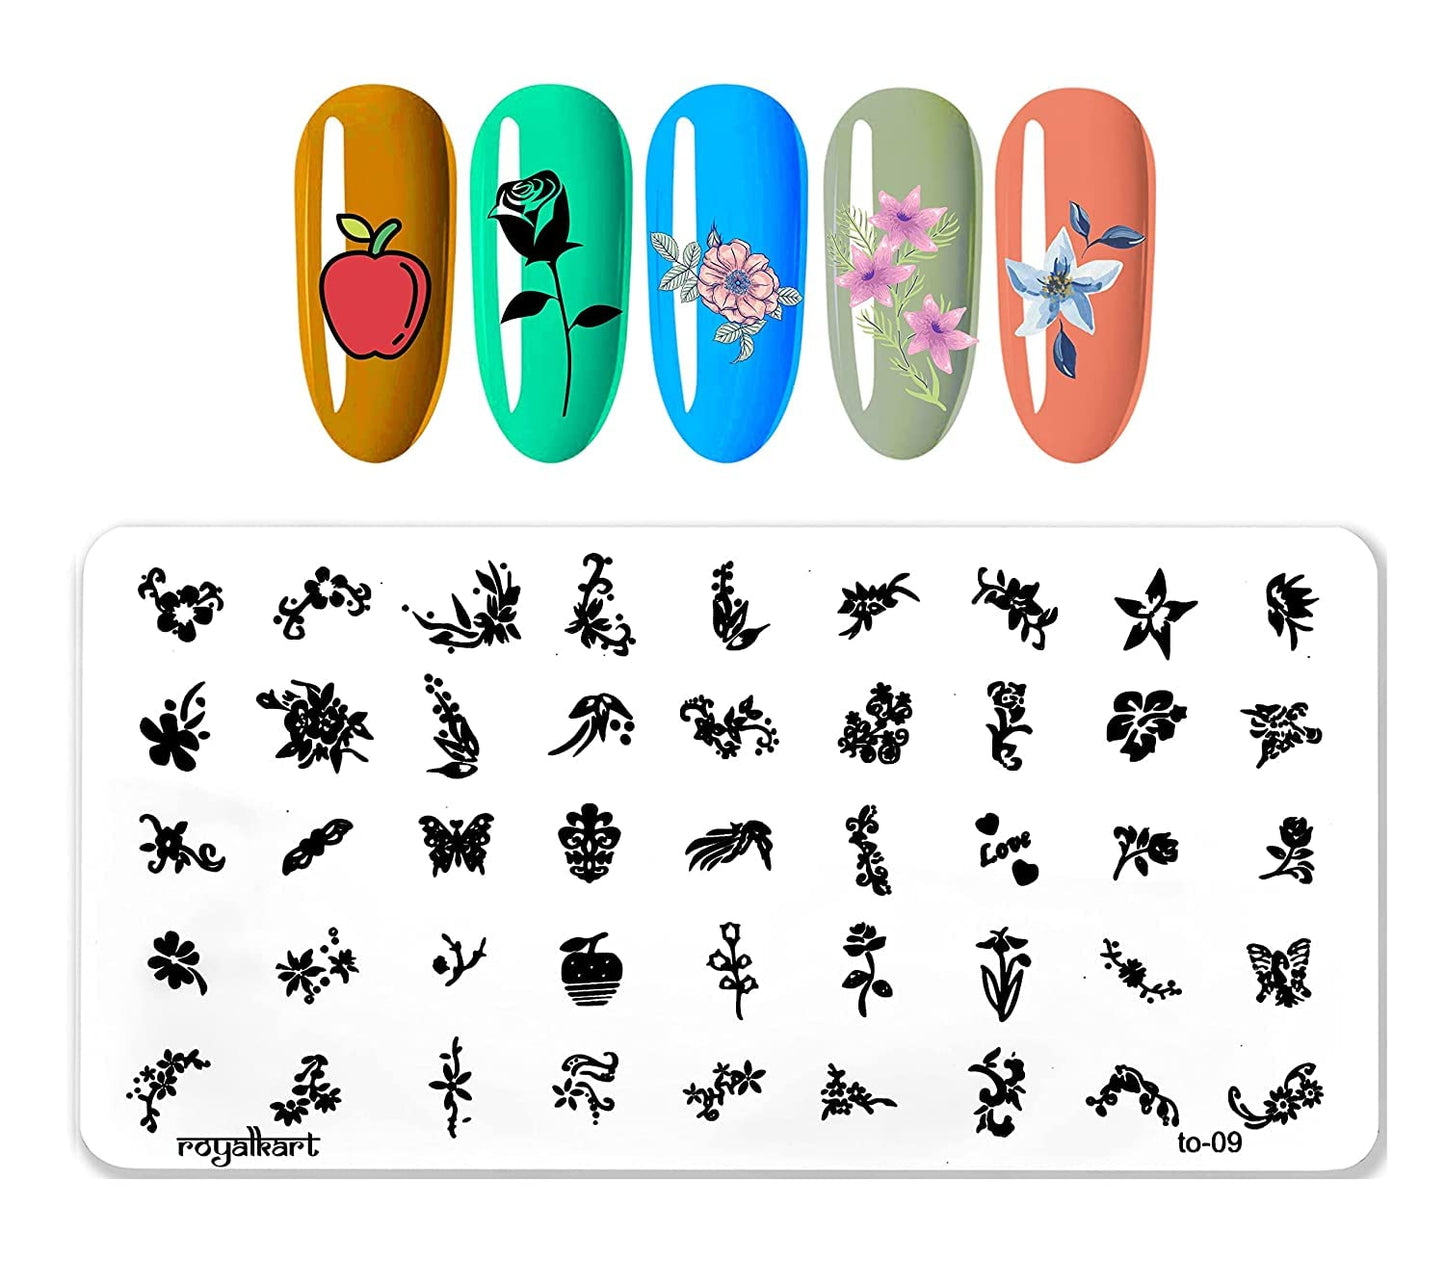 Nail Art Combo XY-13 with TO-09,03 Nail Art Combo- #Royalkart#nail art stamping kit